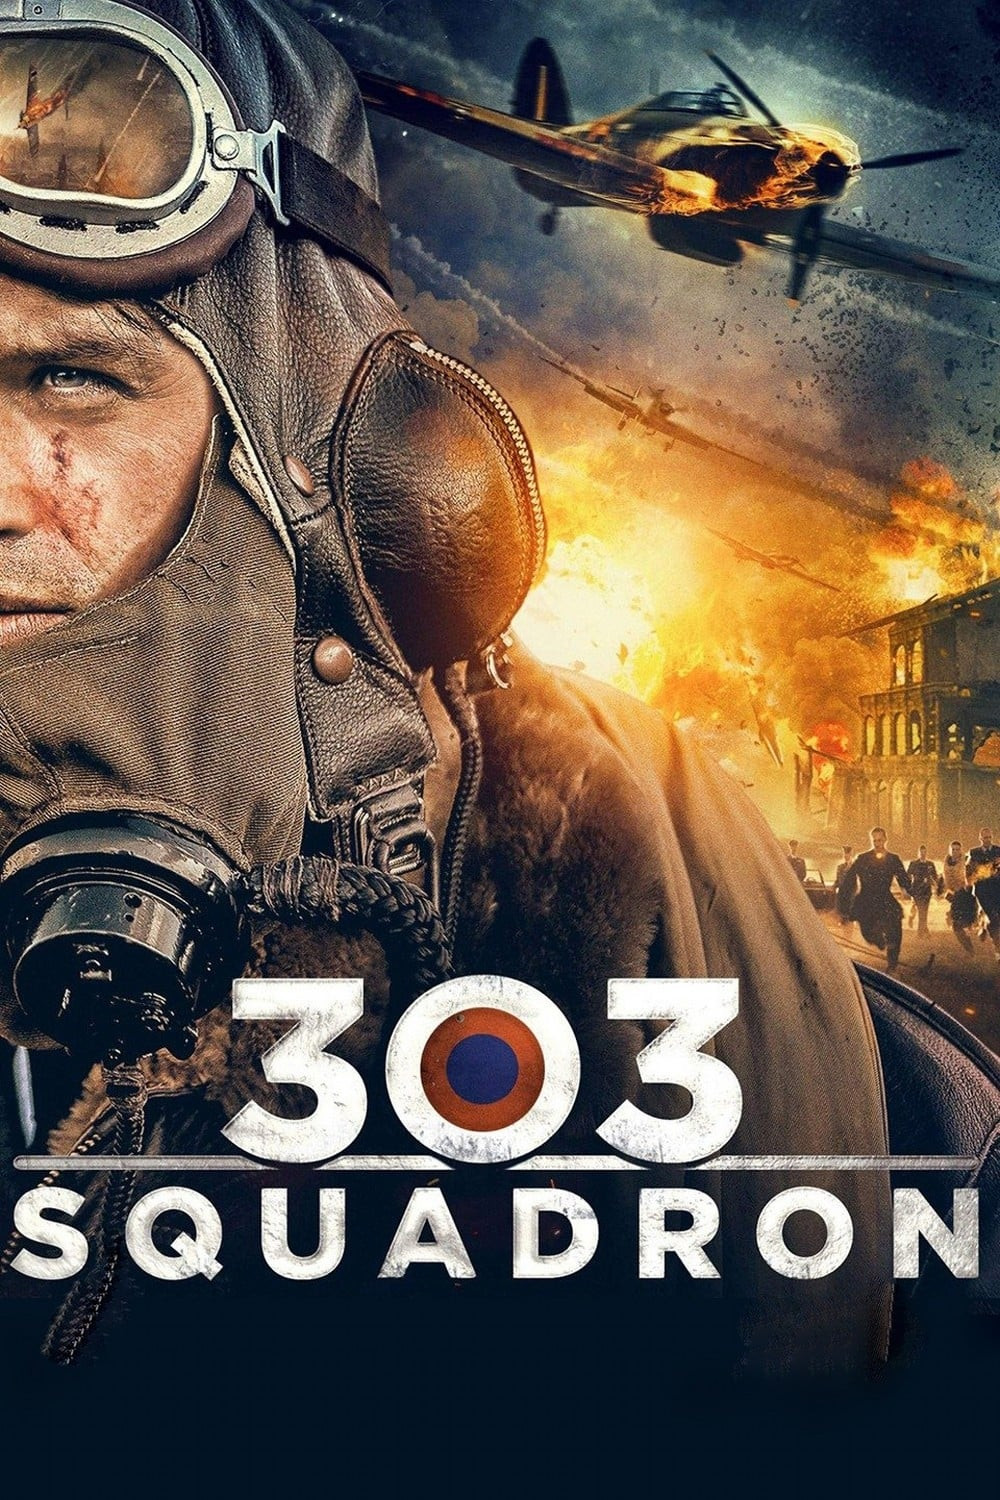 فيلم Squadron 303 2018 مترجم اون لاين